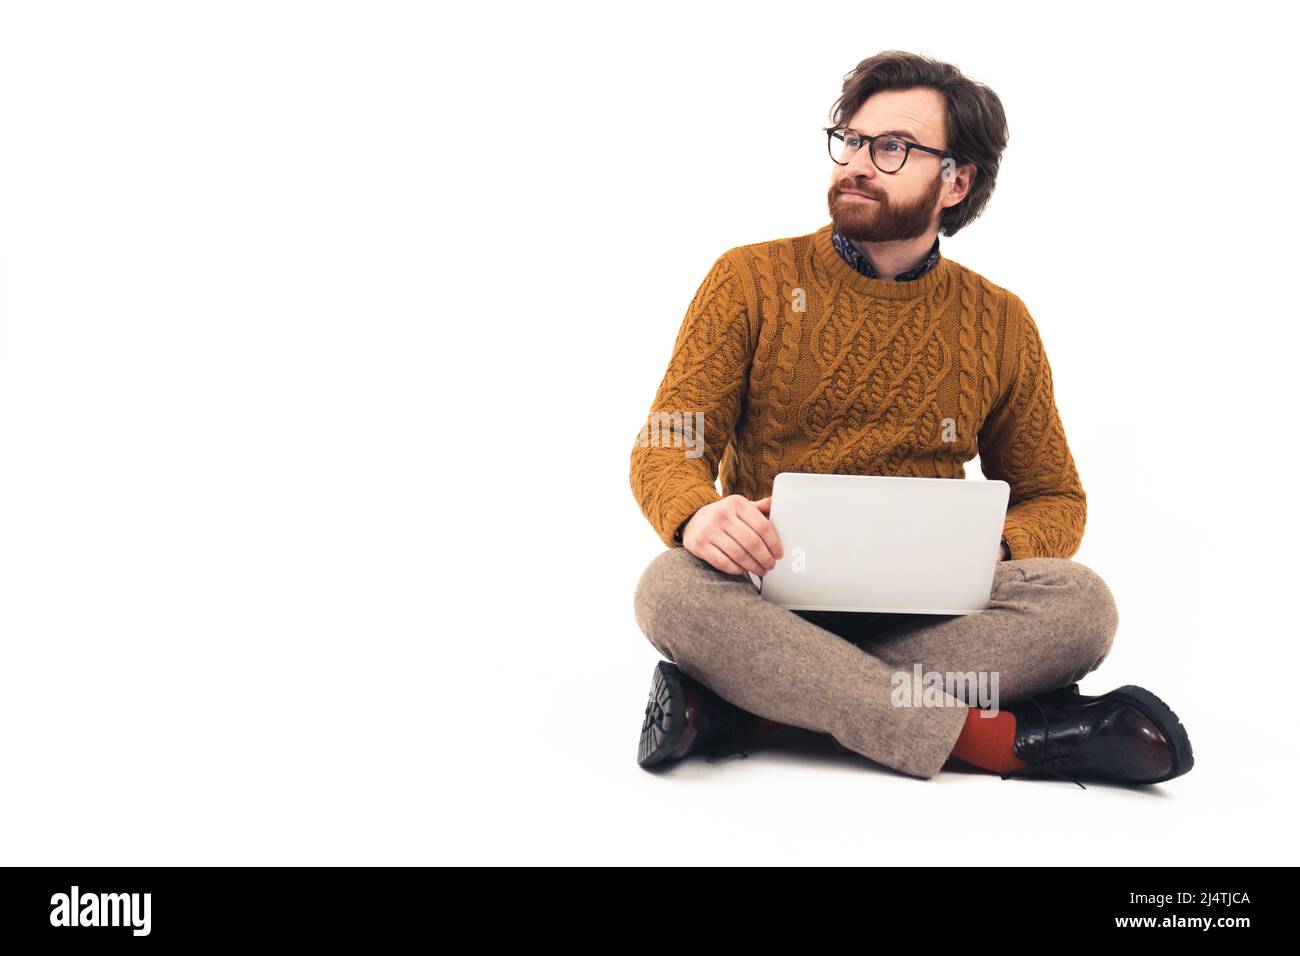 Bärtiger Mann mit moderner Brille, sitzend mit gekreuzten Beinen und Laptop auf den Knien haltend, der von der Kamera wegschaut. Hochwertige Fotos Stockfoto